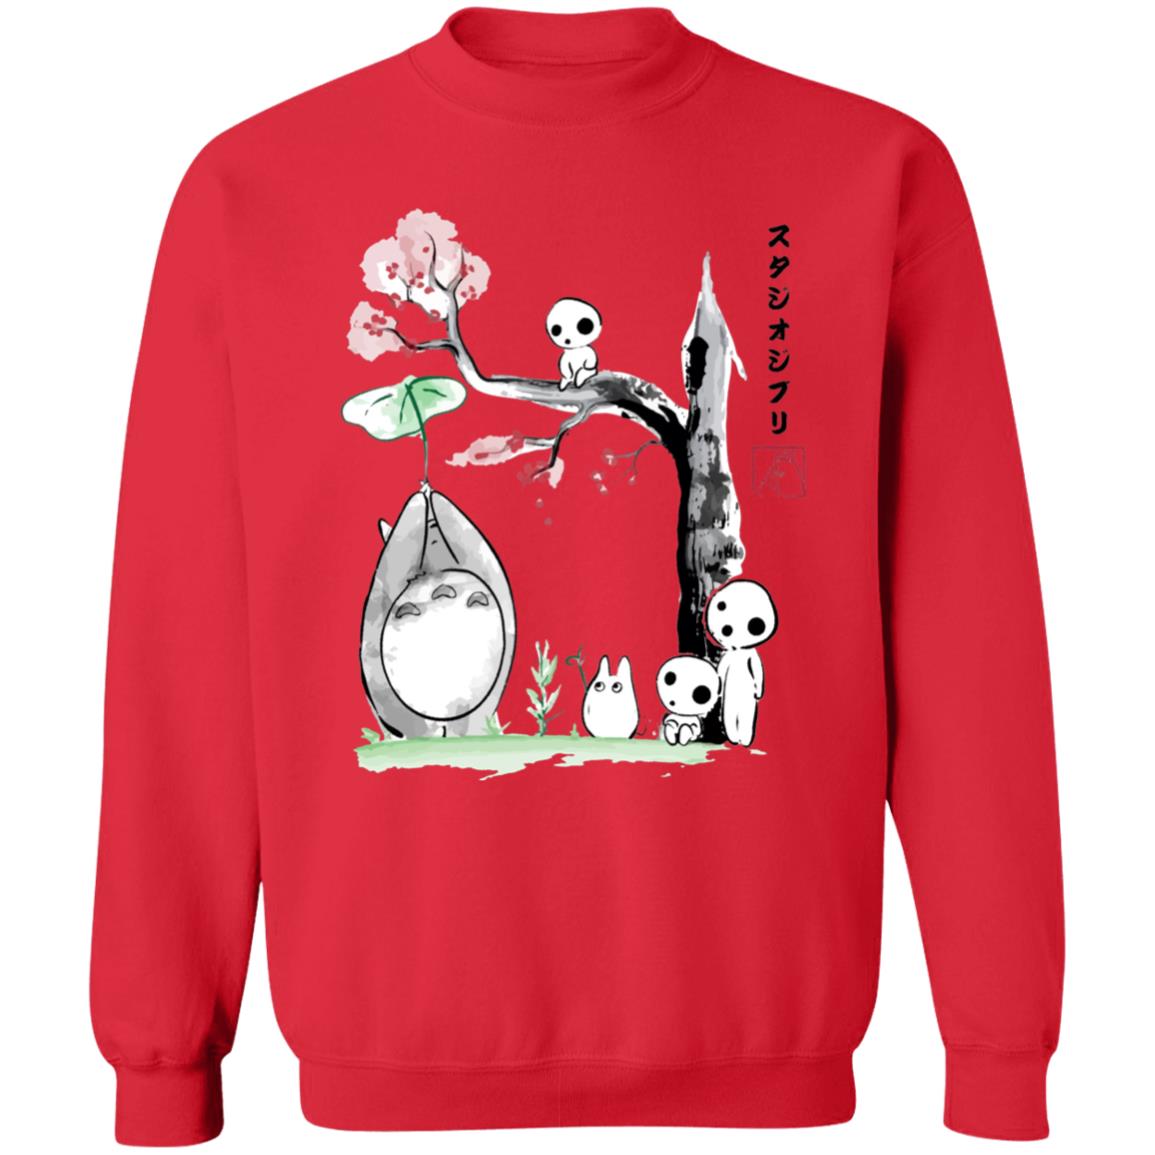 Totoro and the Tree Spirits Sweatshirt